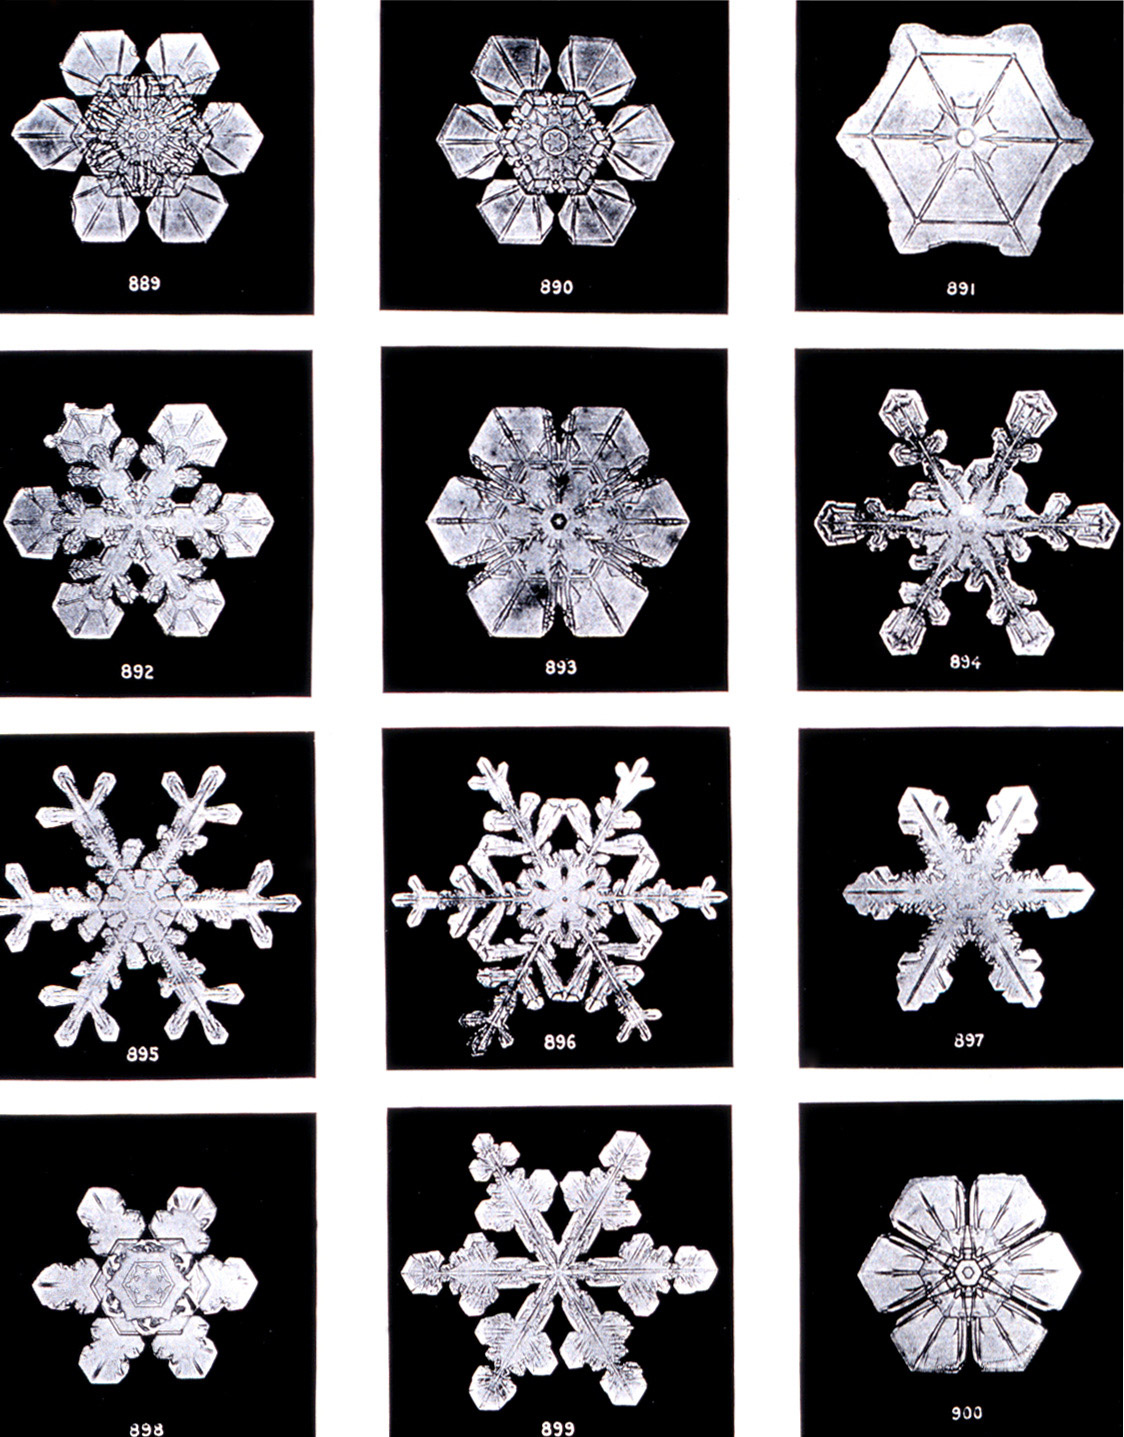 Fotos de Wilson Bentley a cristales de nieve. Wikipedia Commons.